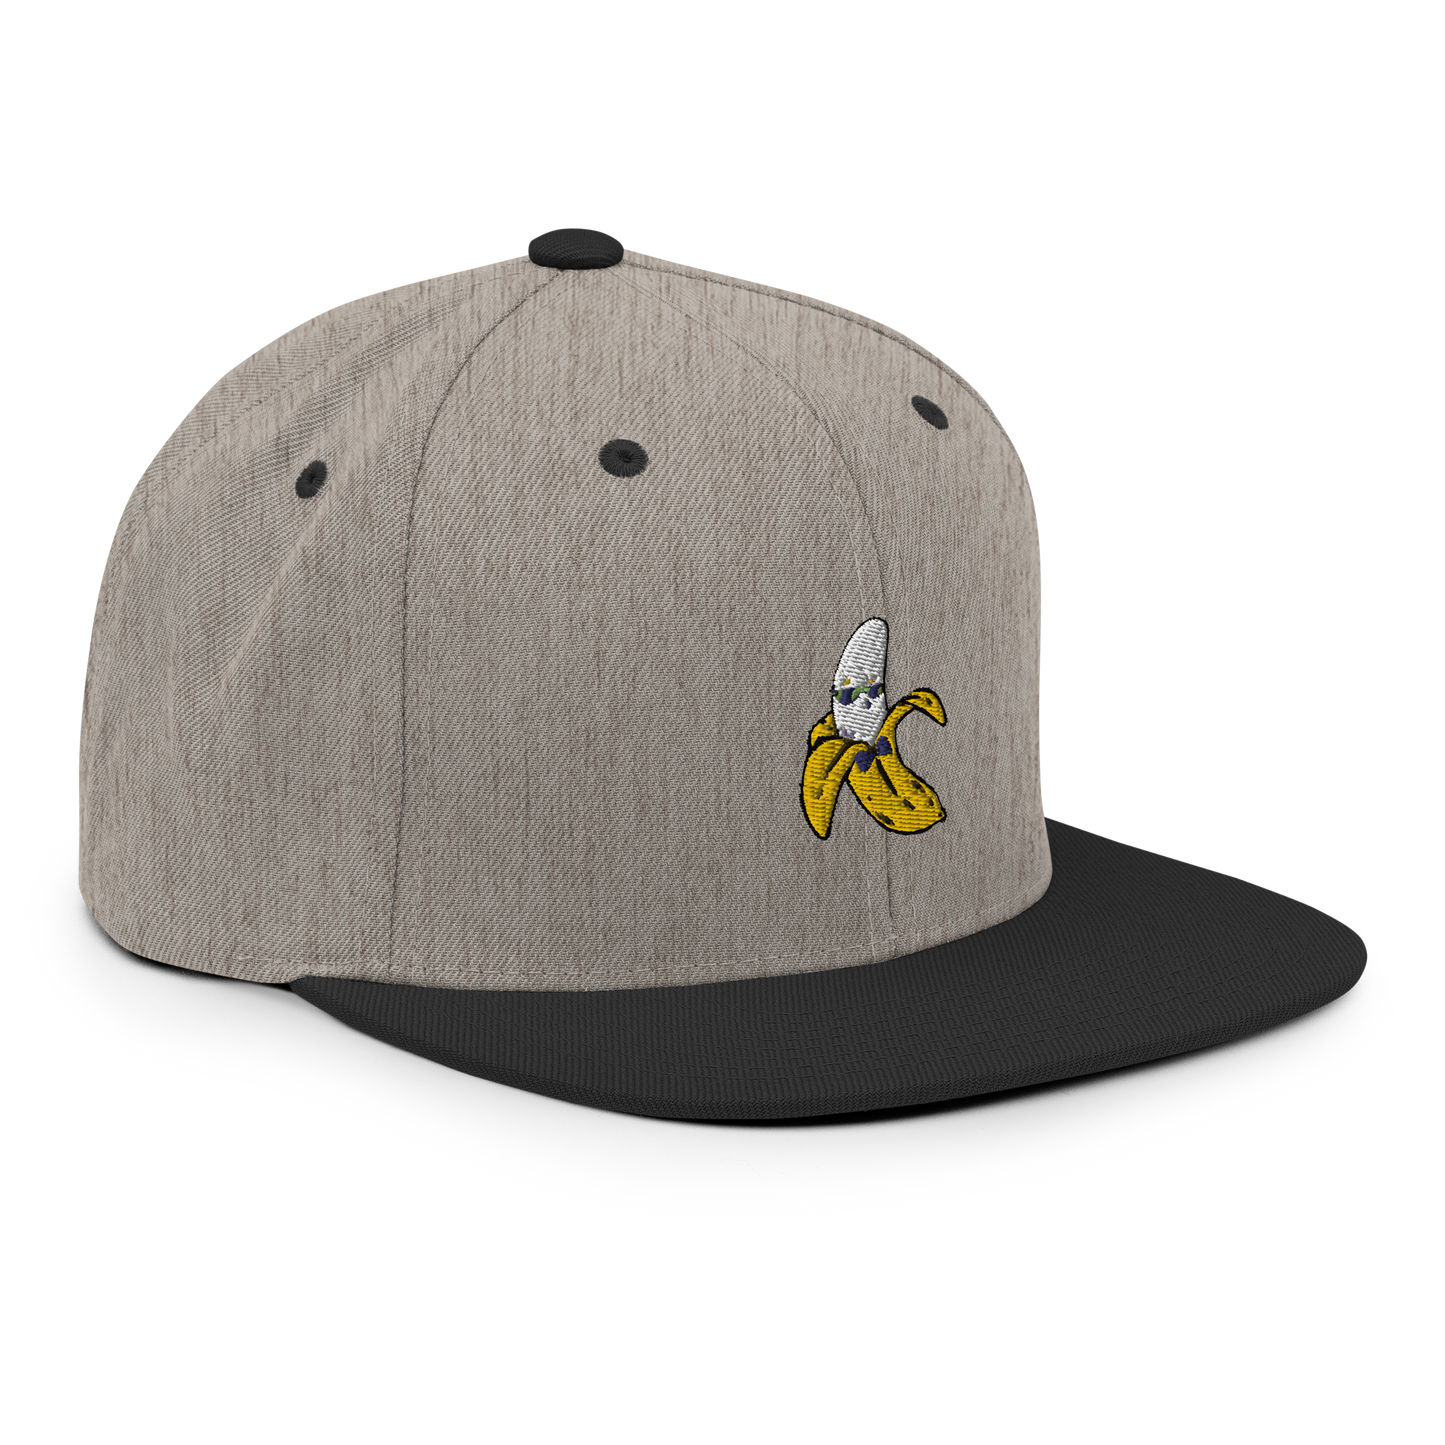 Banana Snapback Hat